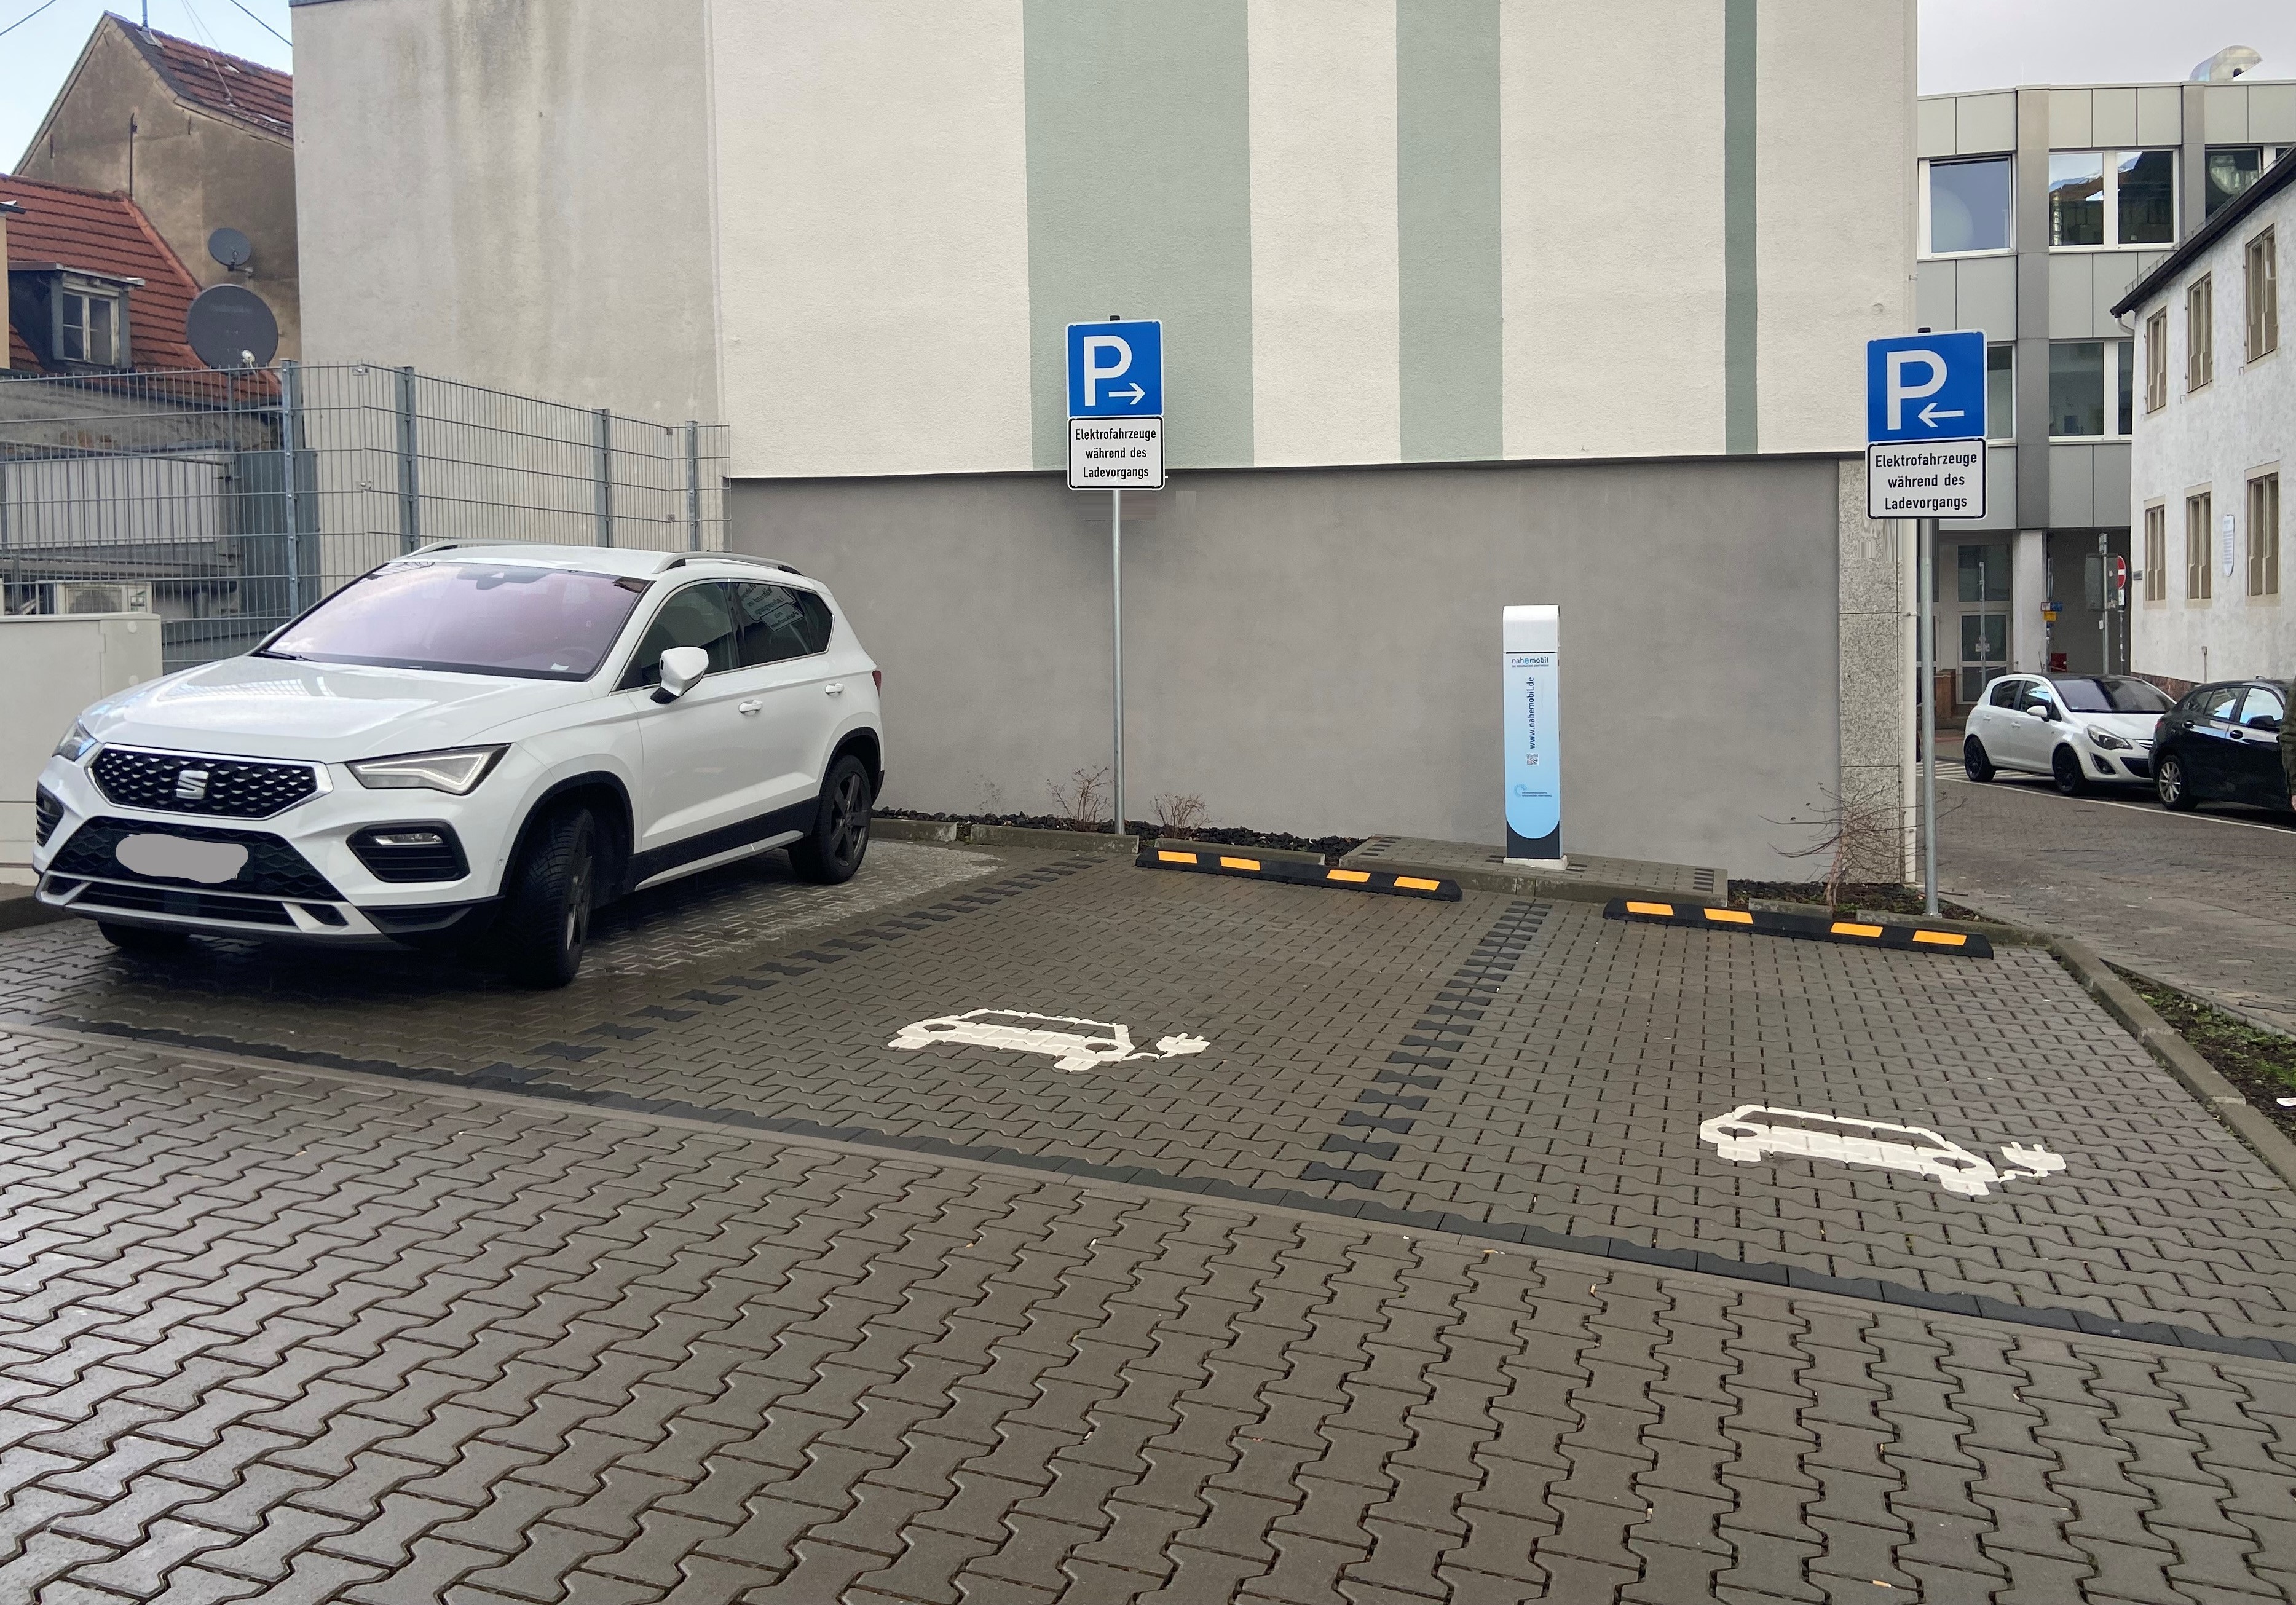 Markierung E-Parkplatzsymbol